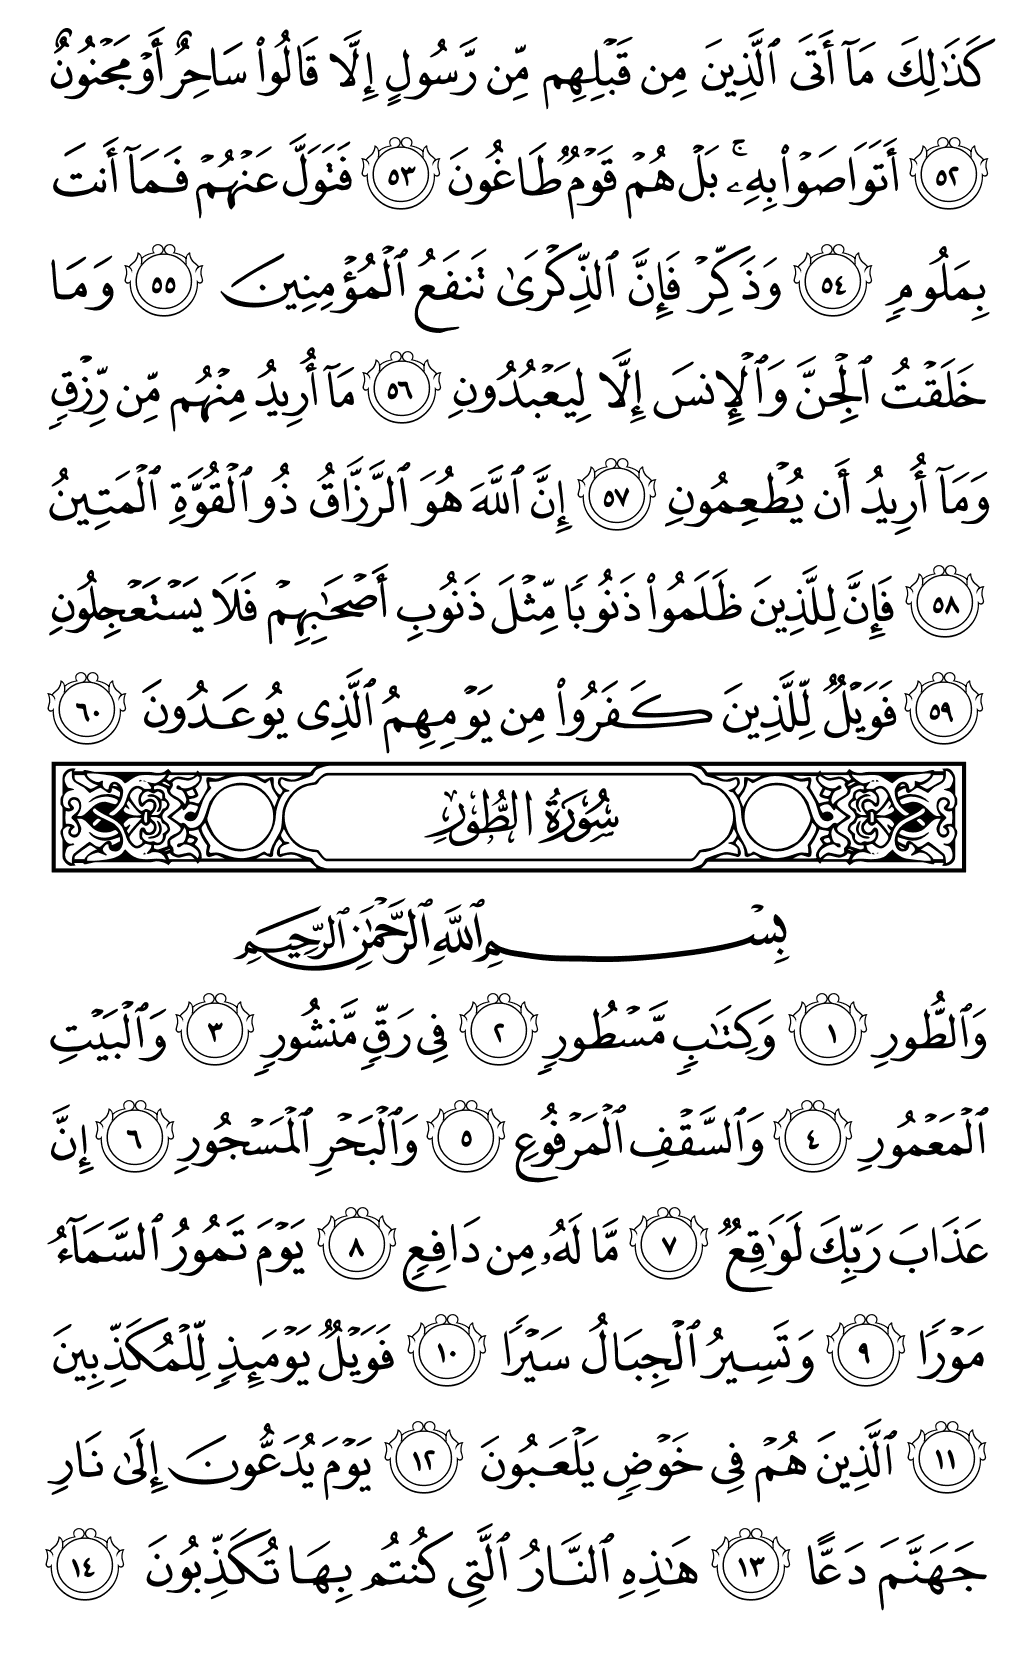 الصفحة رقم 523 من القرآن الكريم